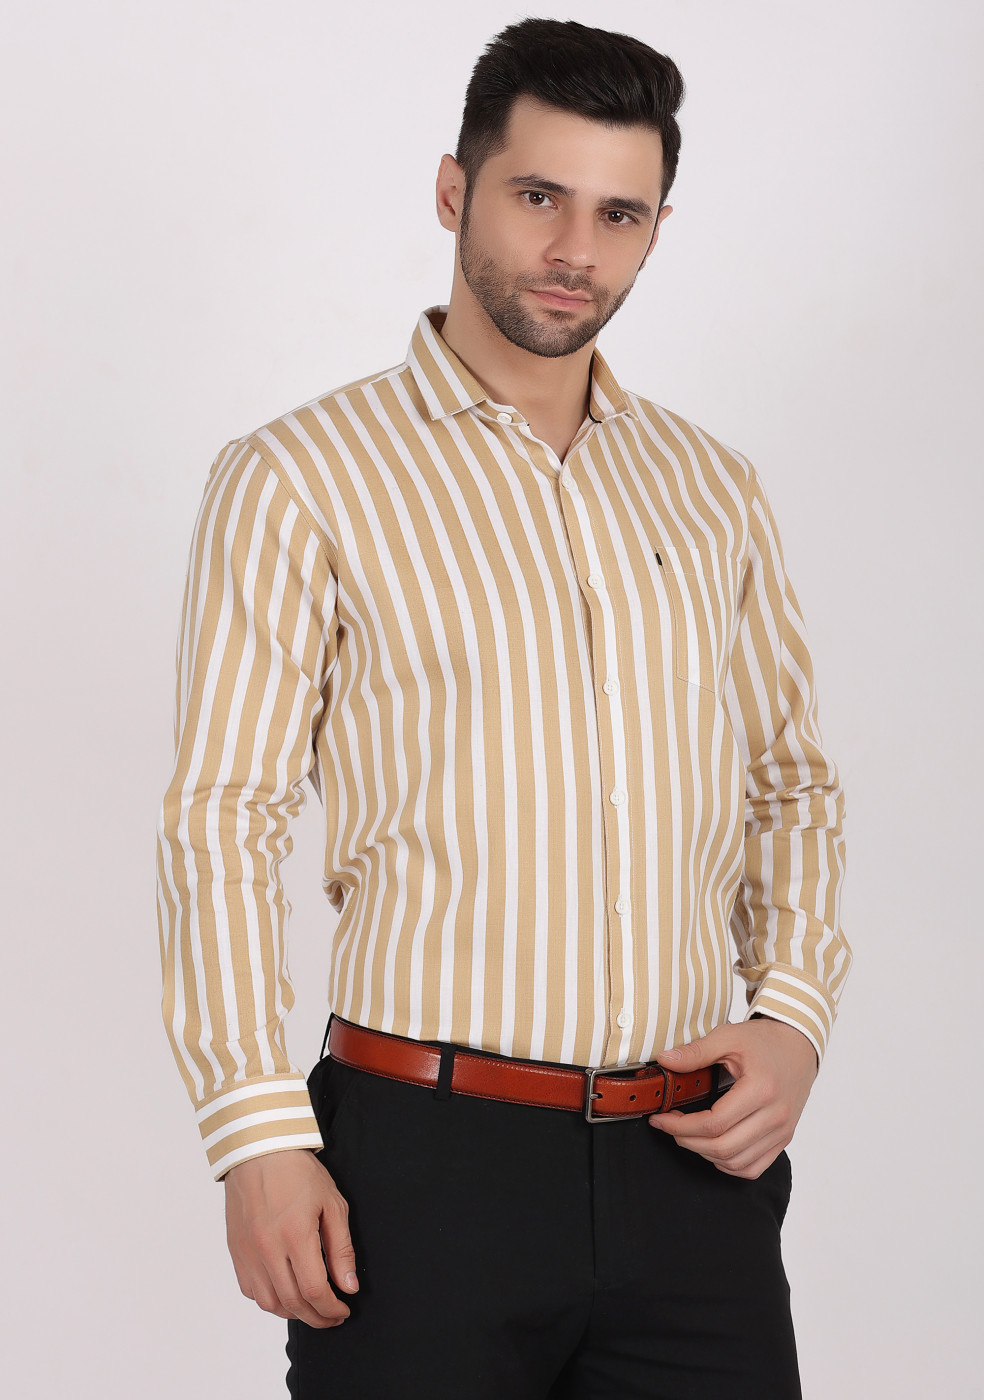 Buy online ASHTOM Mustard White Lining Shirt For Men